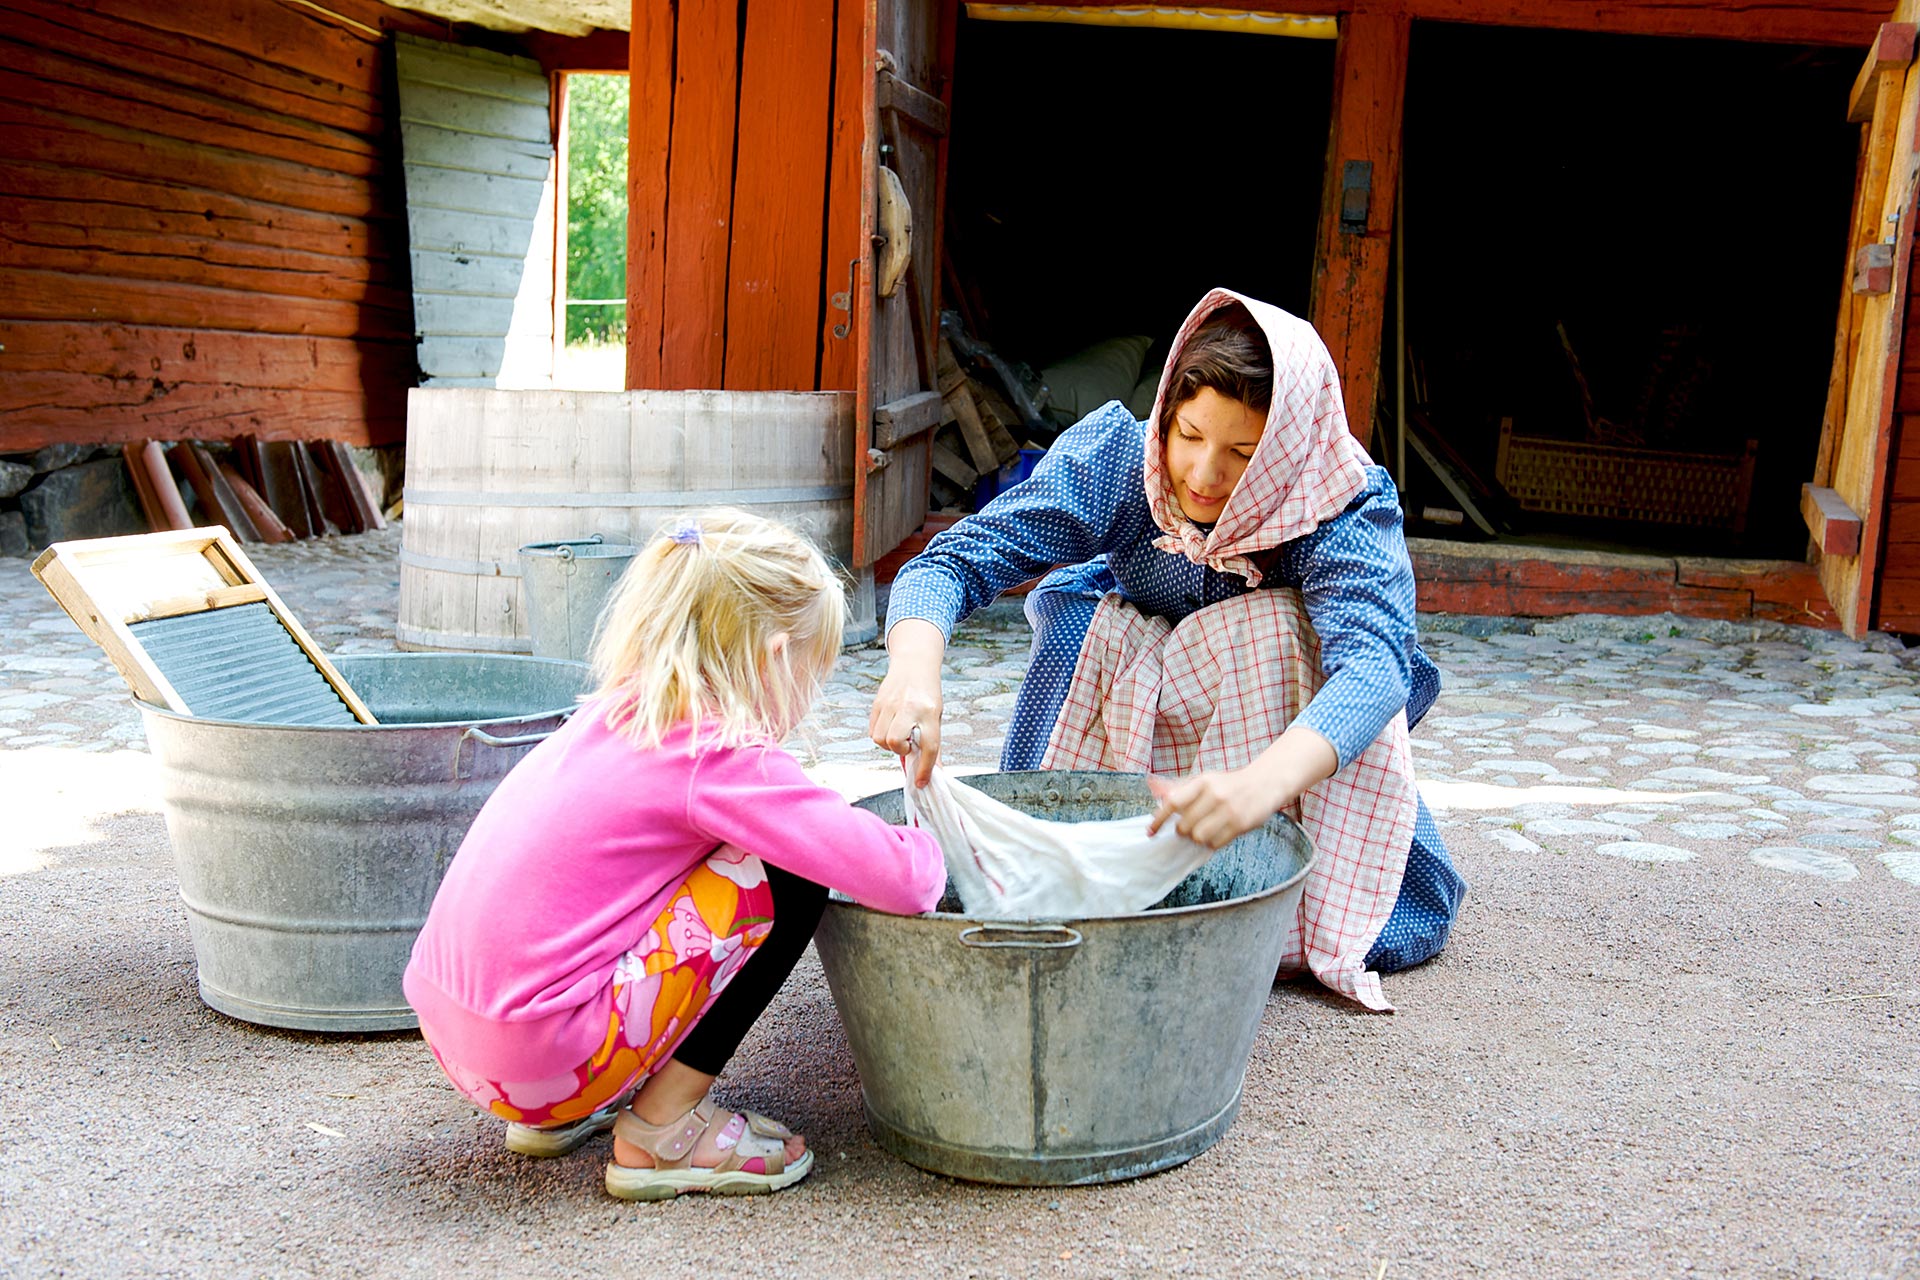 En kvinna från Vallby Fridluftsmuseum i Västerås utklädd till piga tvättar tvätt i tvättbalja med ett barn som är på besök. Fotograf: Leon Grimaldi